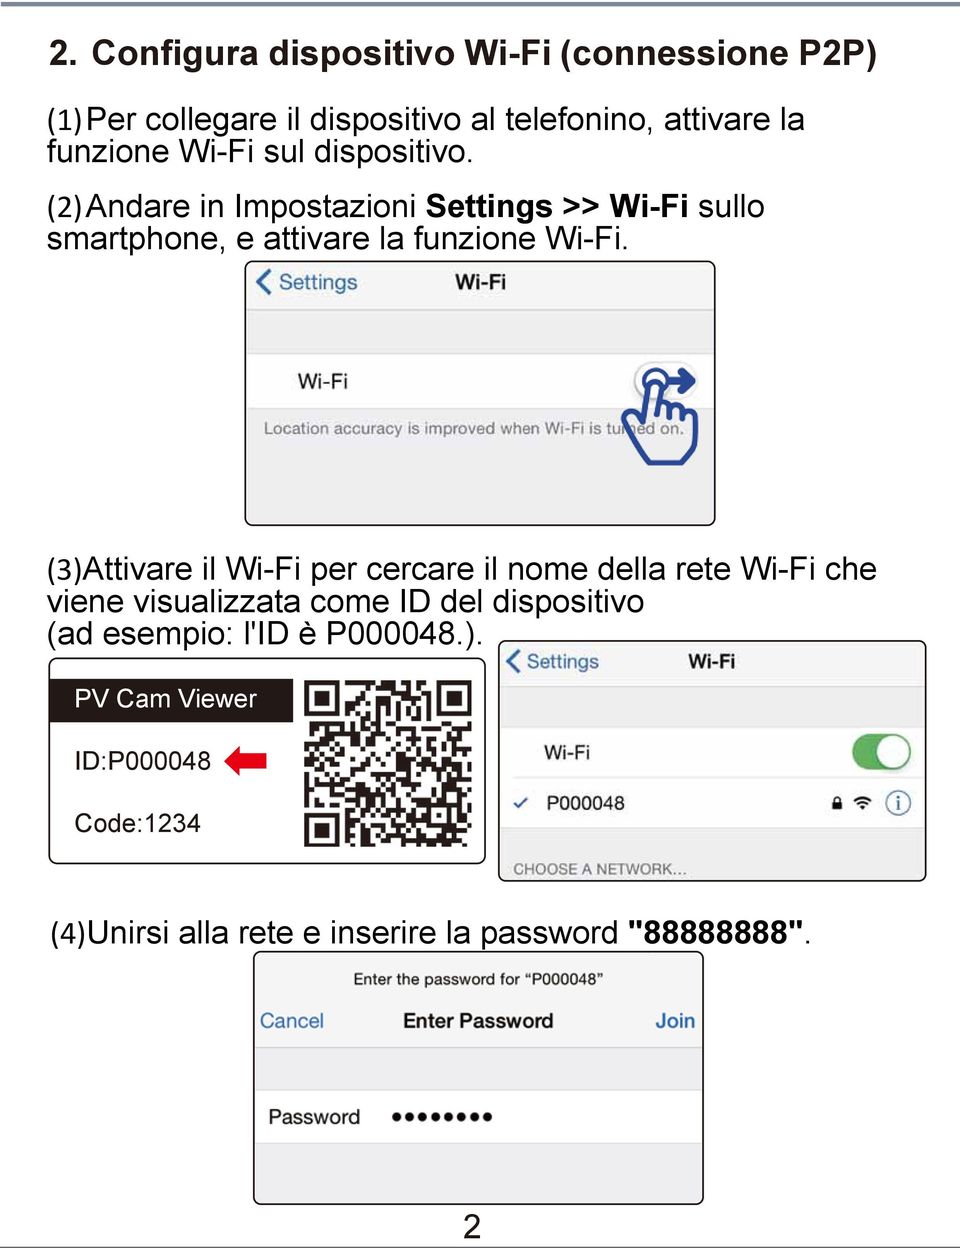 (2) Andare in Impostazioni Settings >> Wi-Fi sullo smartphone, e attivare la funzione Wi-Fi.